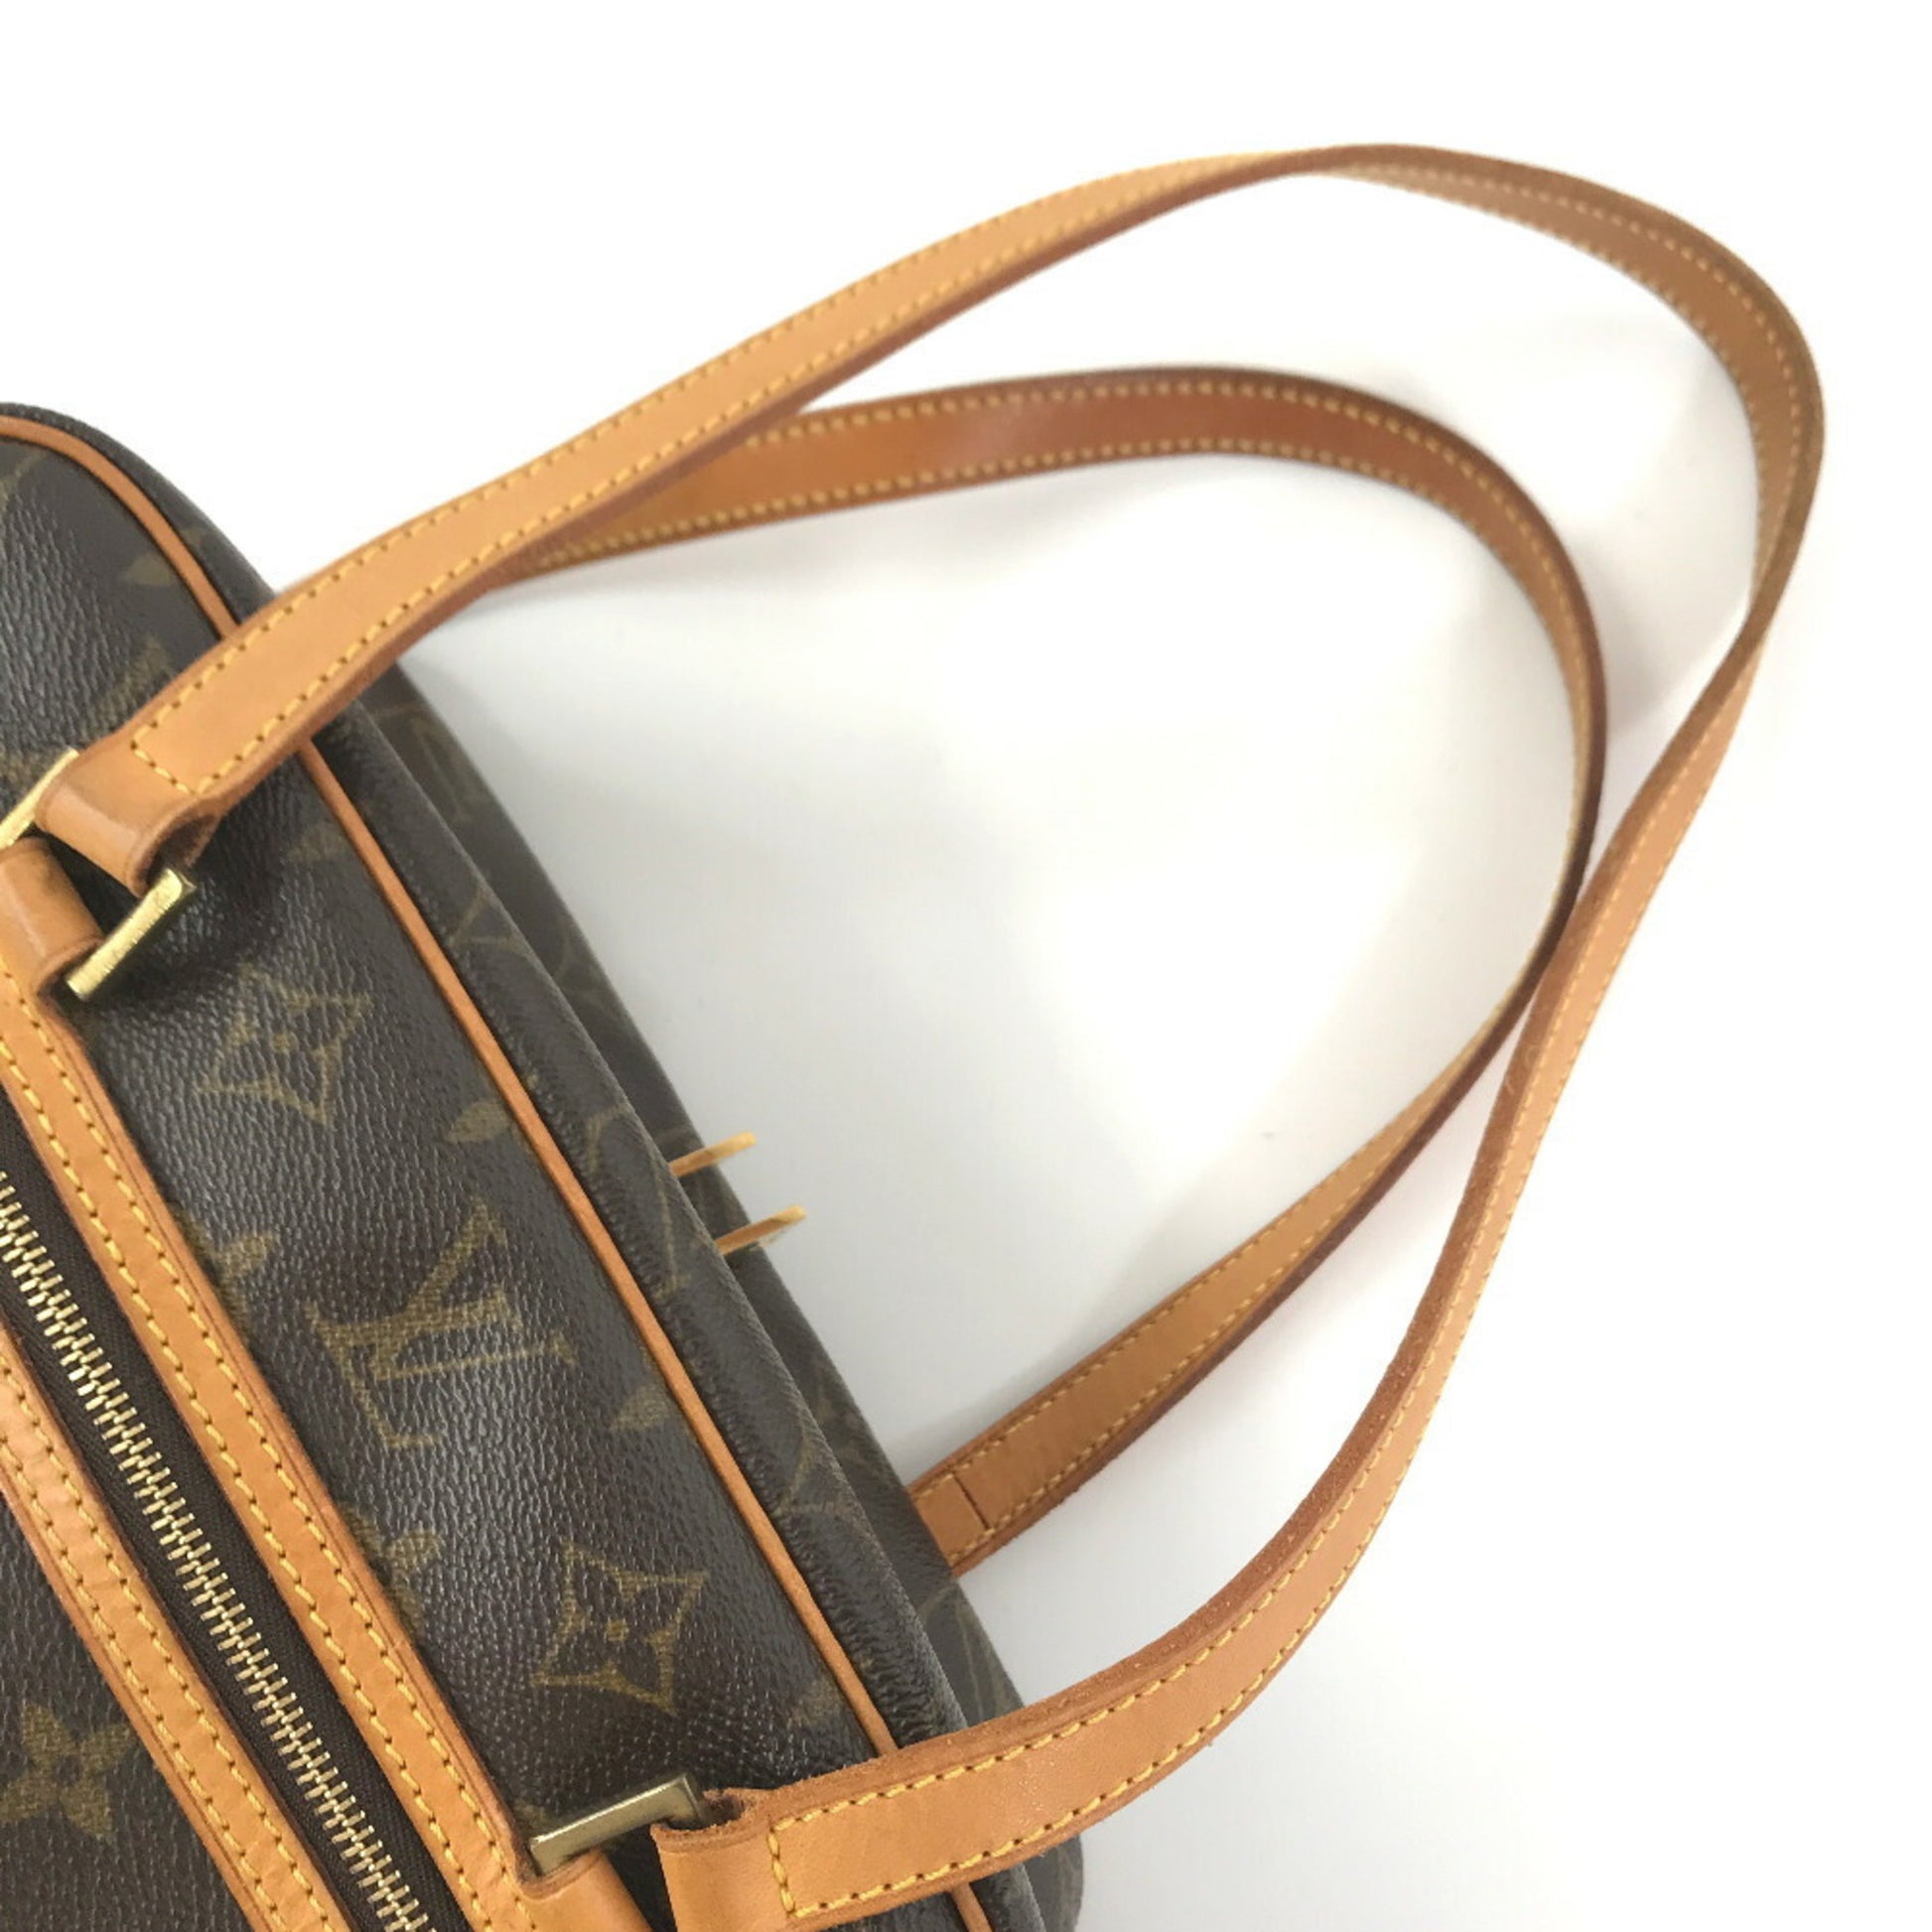 Louis Vuitton Cite MM Monogram Canvas Shoulder Bag For Sale at